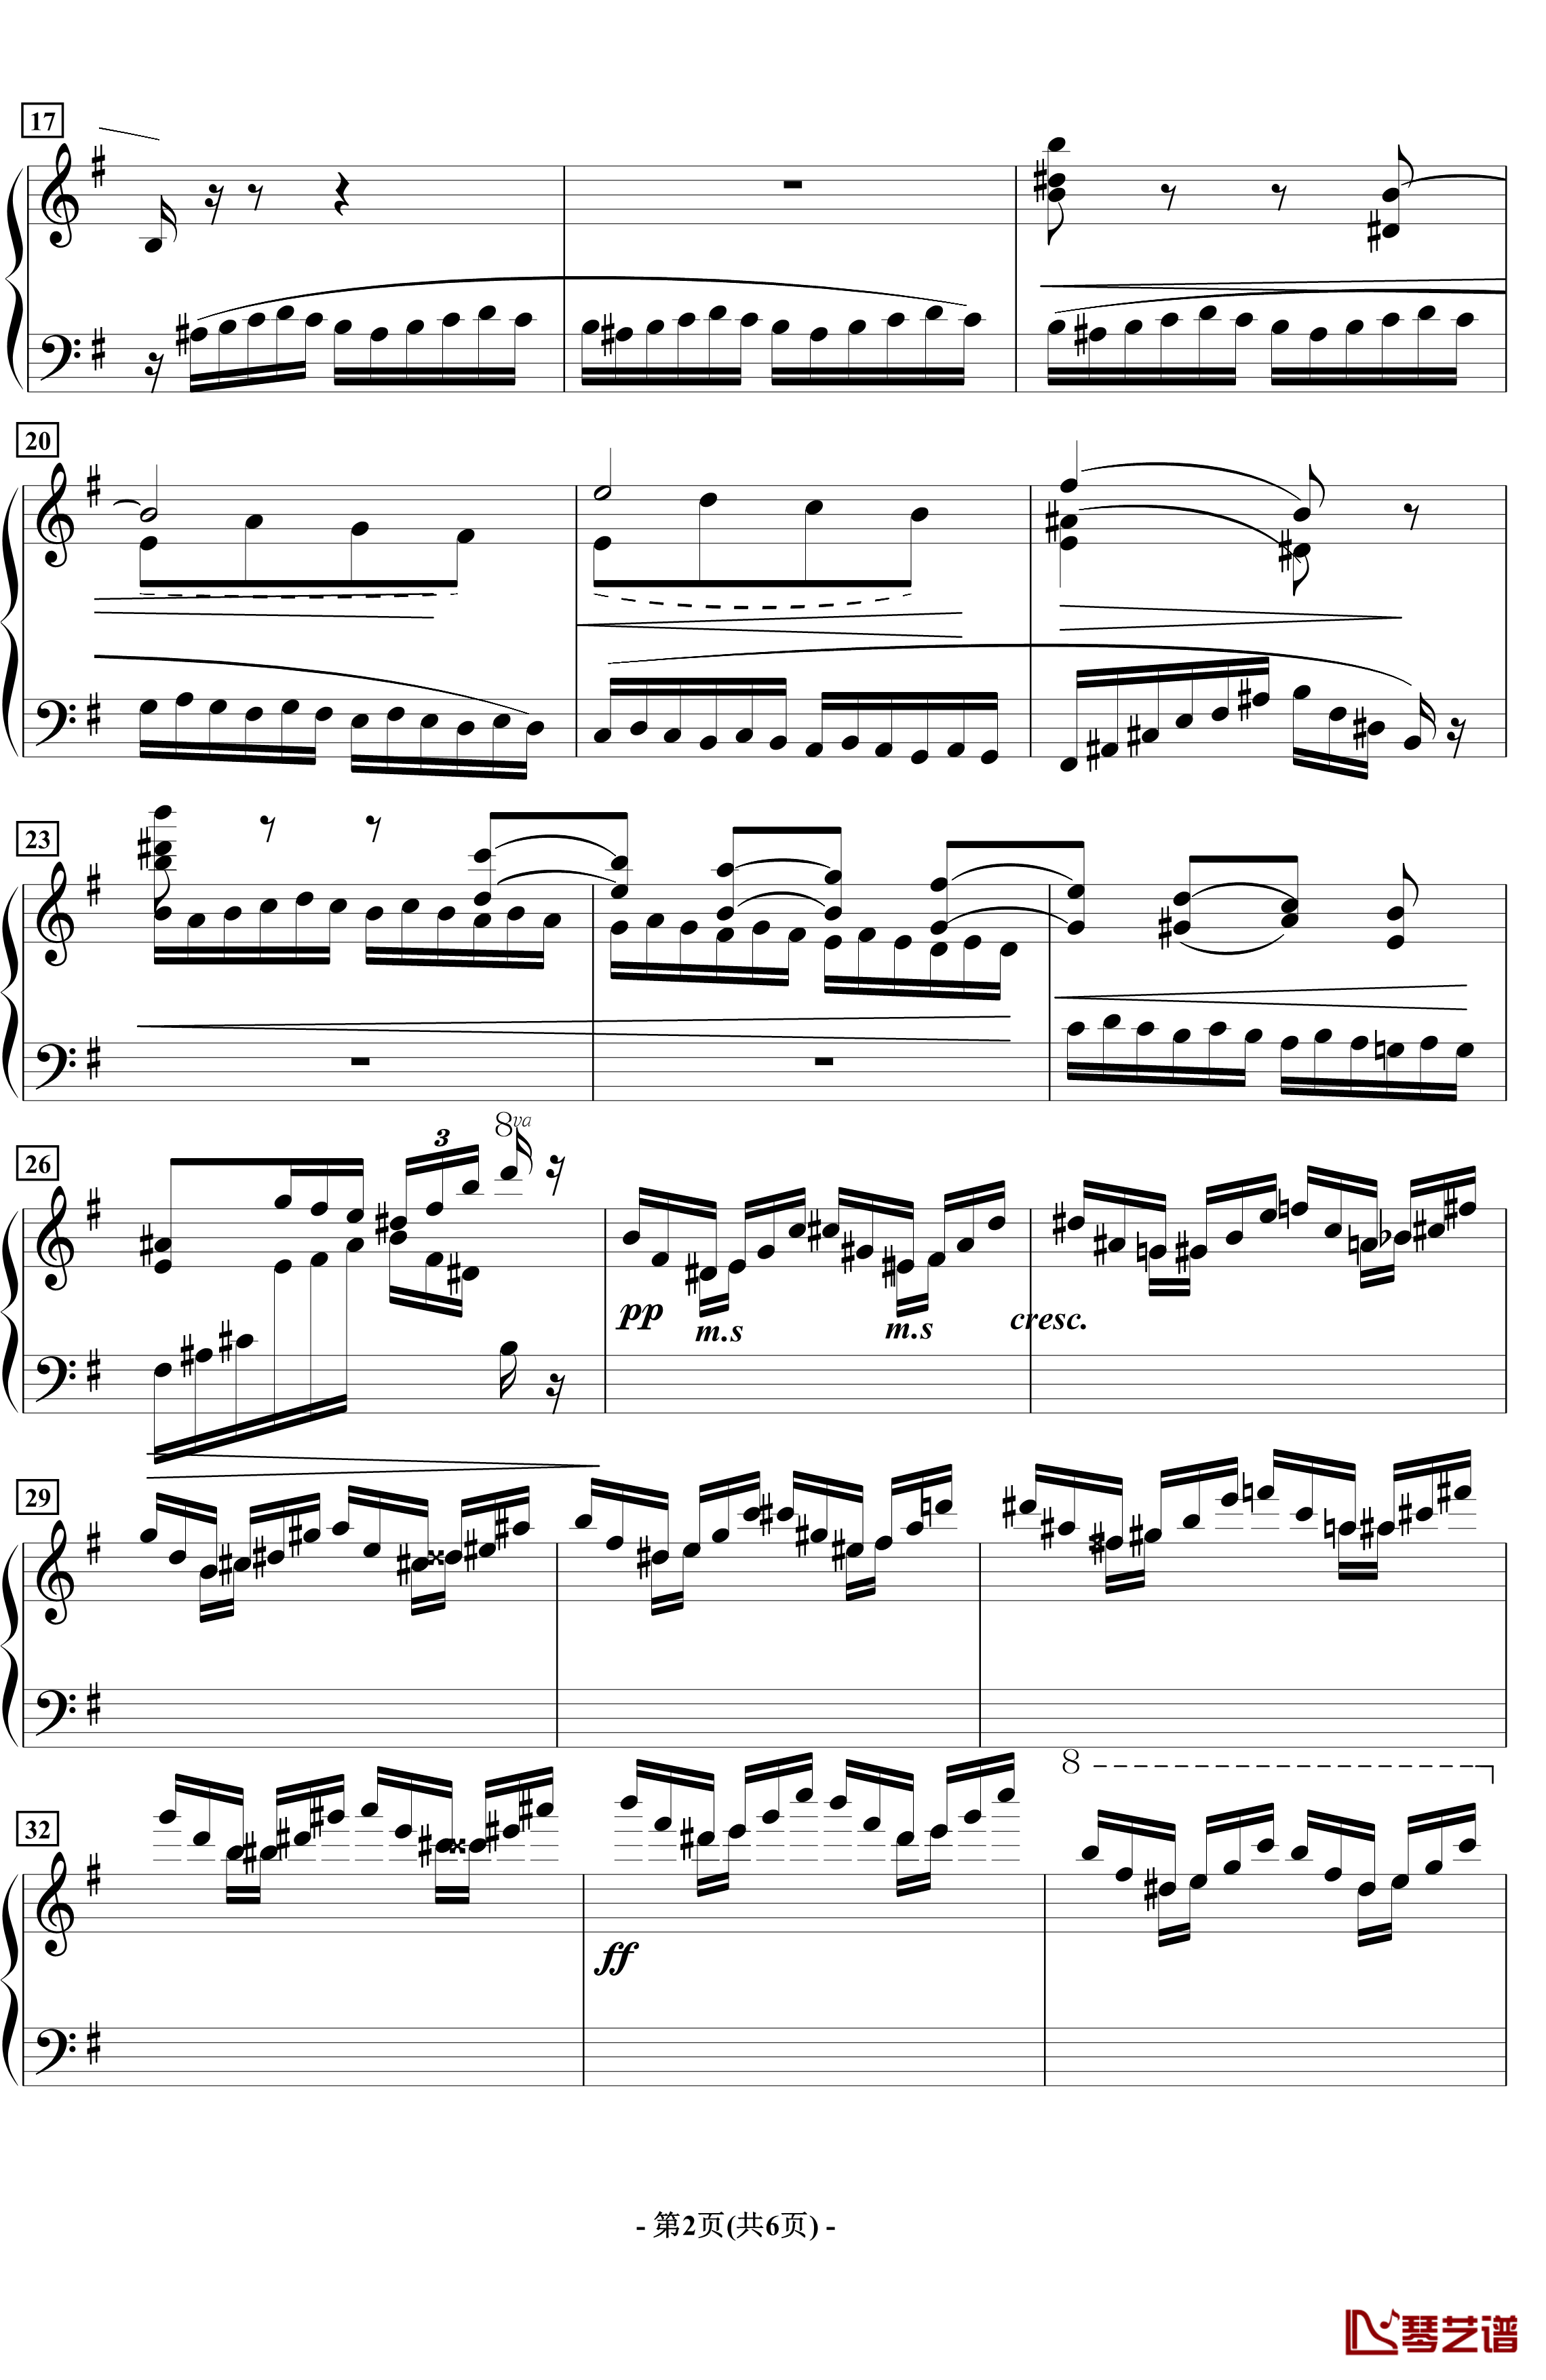 蝴蝶钢琴谱-音乐会练习曲-拉瓦列2